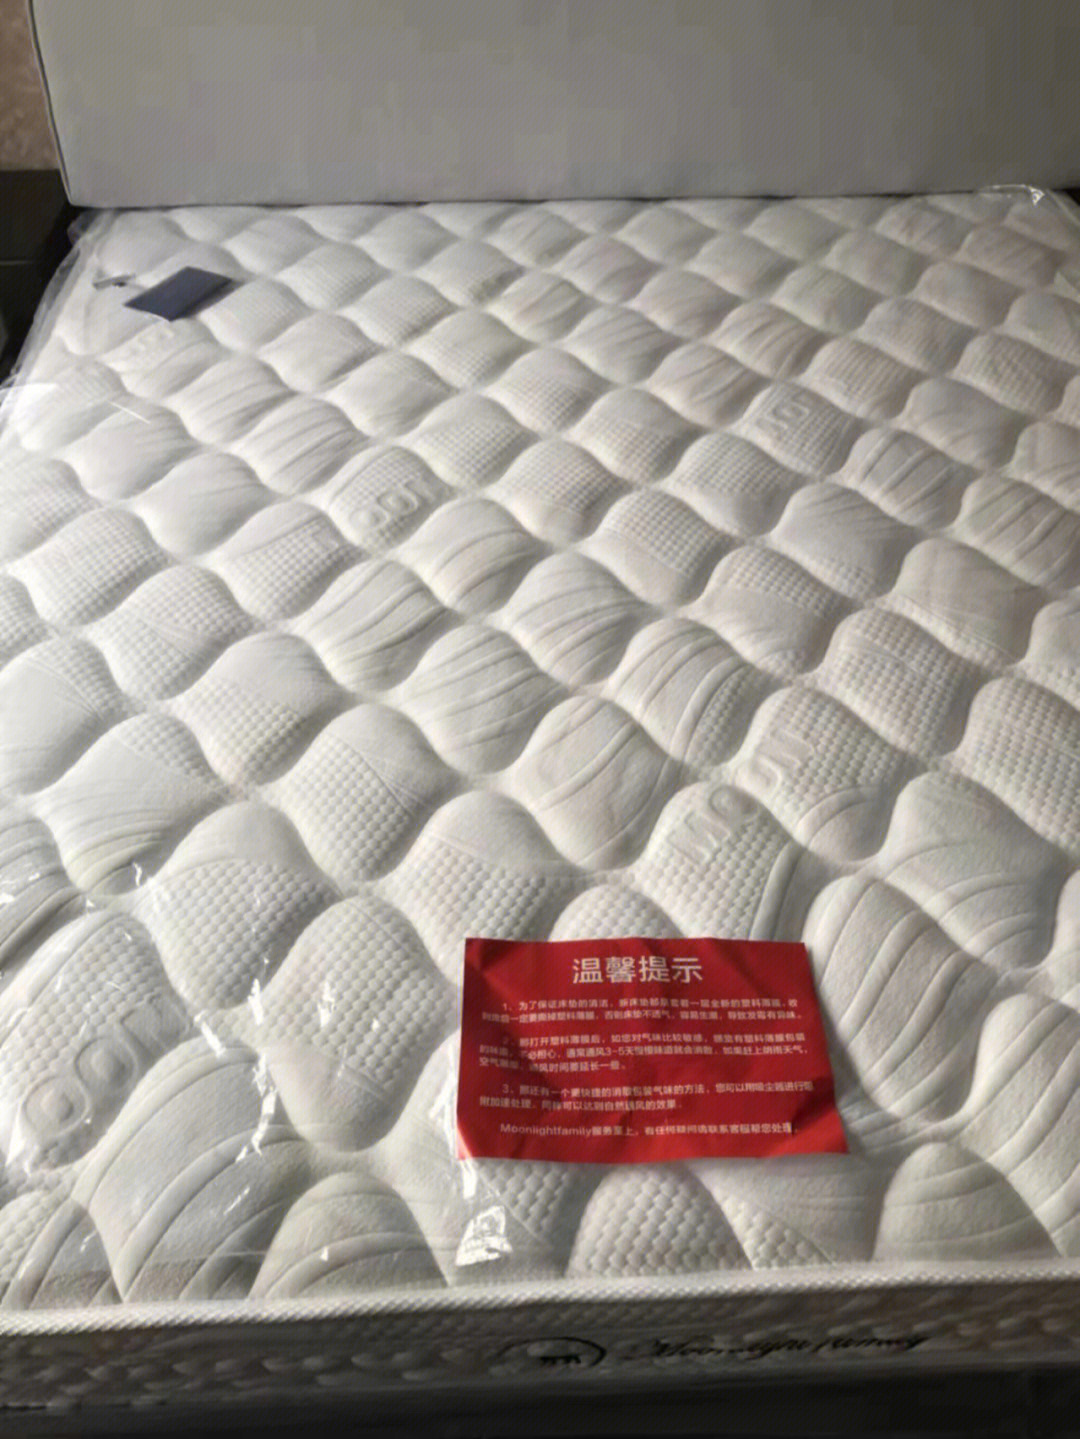 想买好用的乳胶床垫月光之家床垫不错的